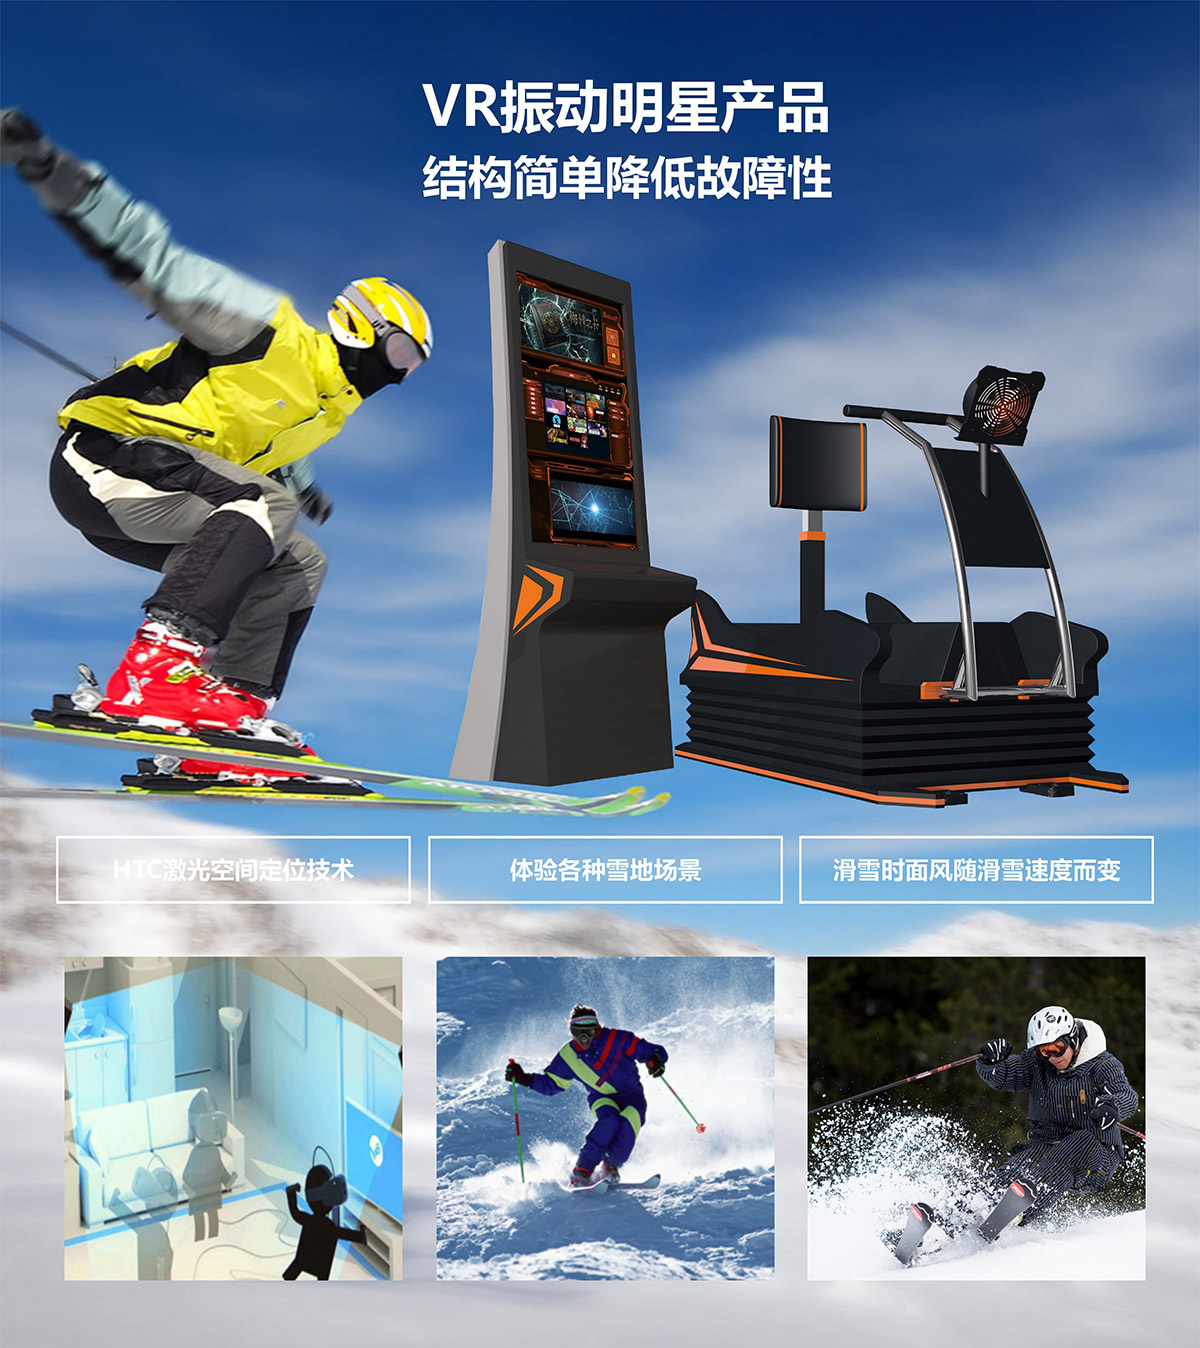 校园安全VR明星产品模拟滑雪.jpg